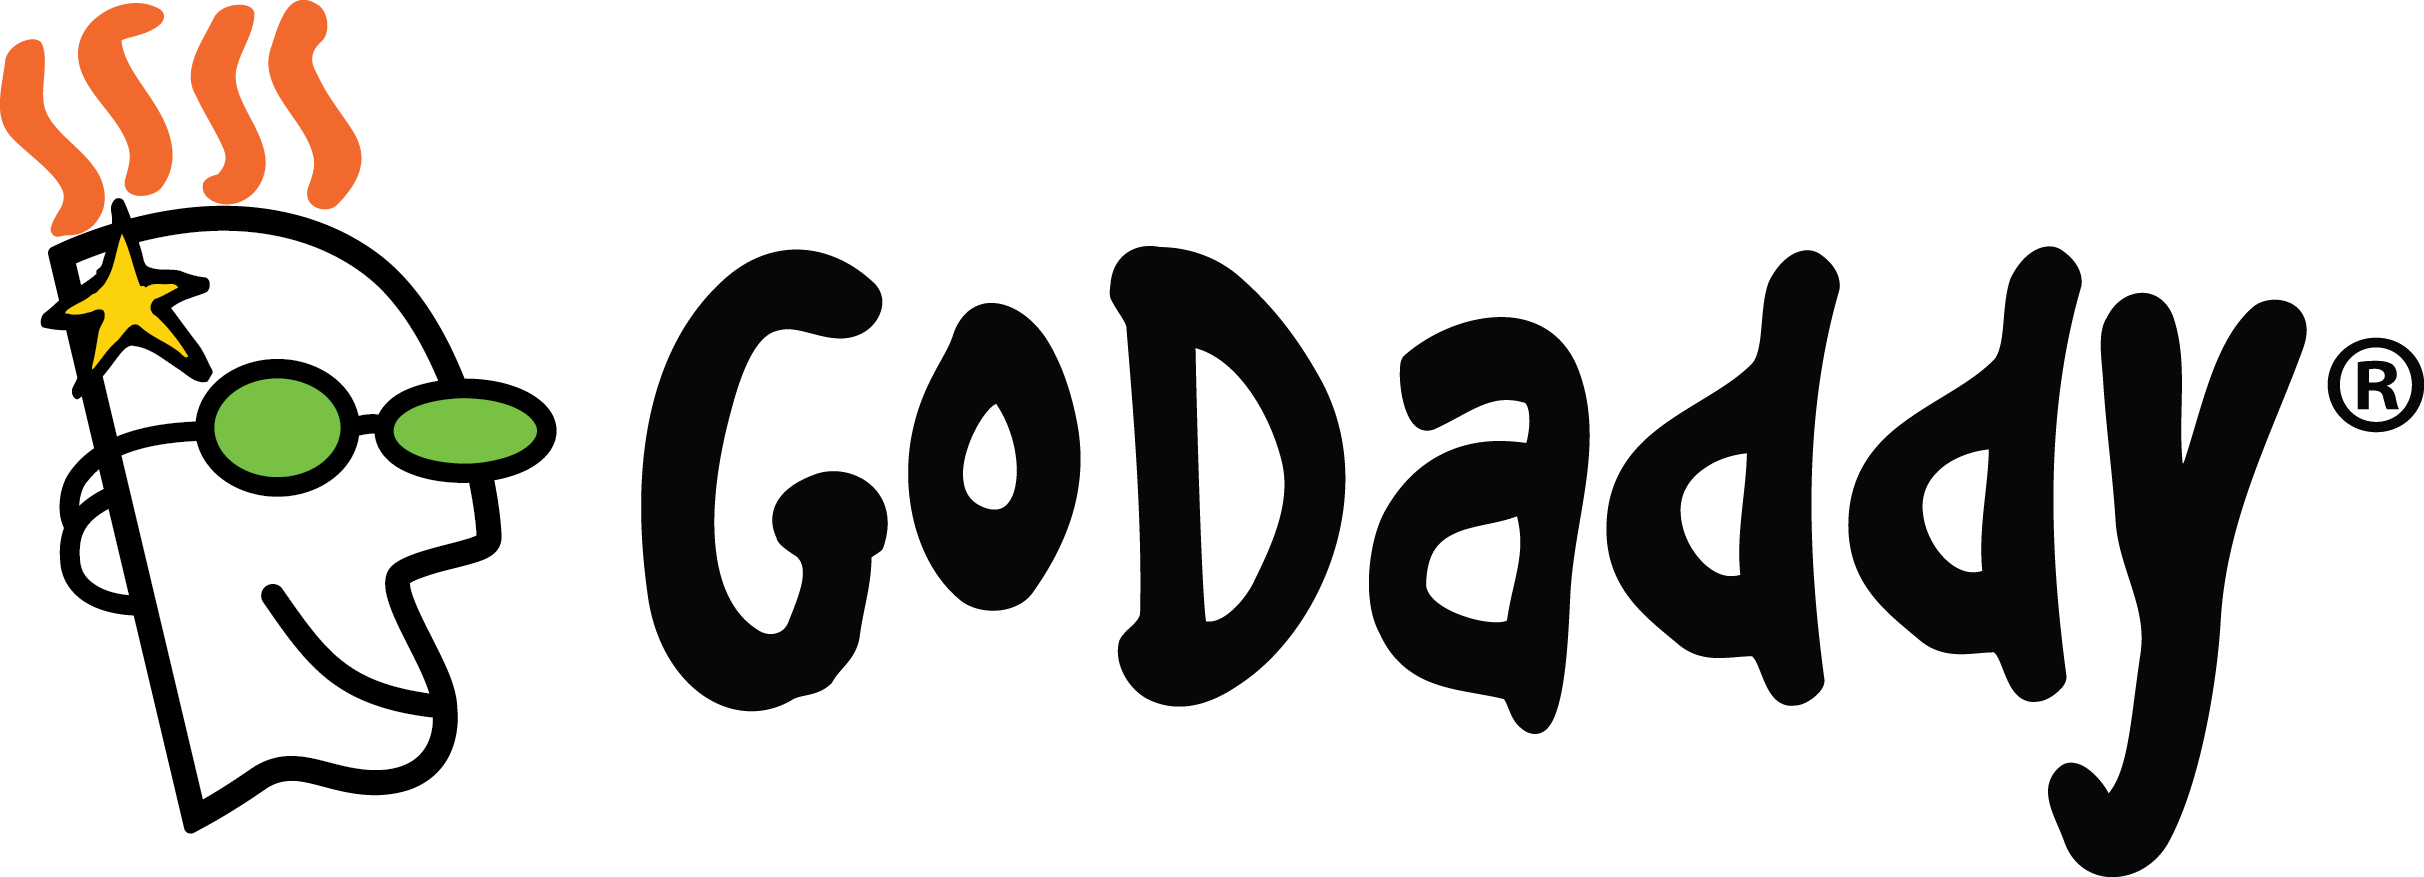 Go-Daddy logo